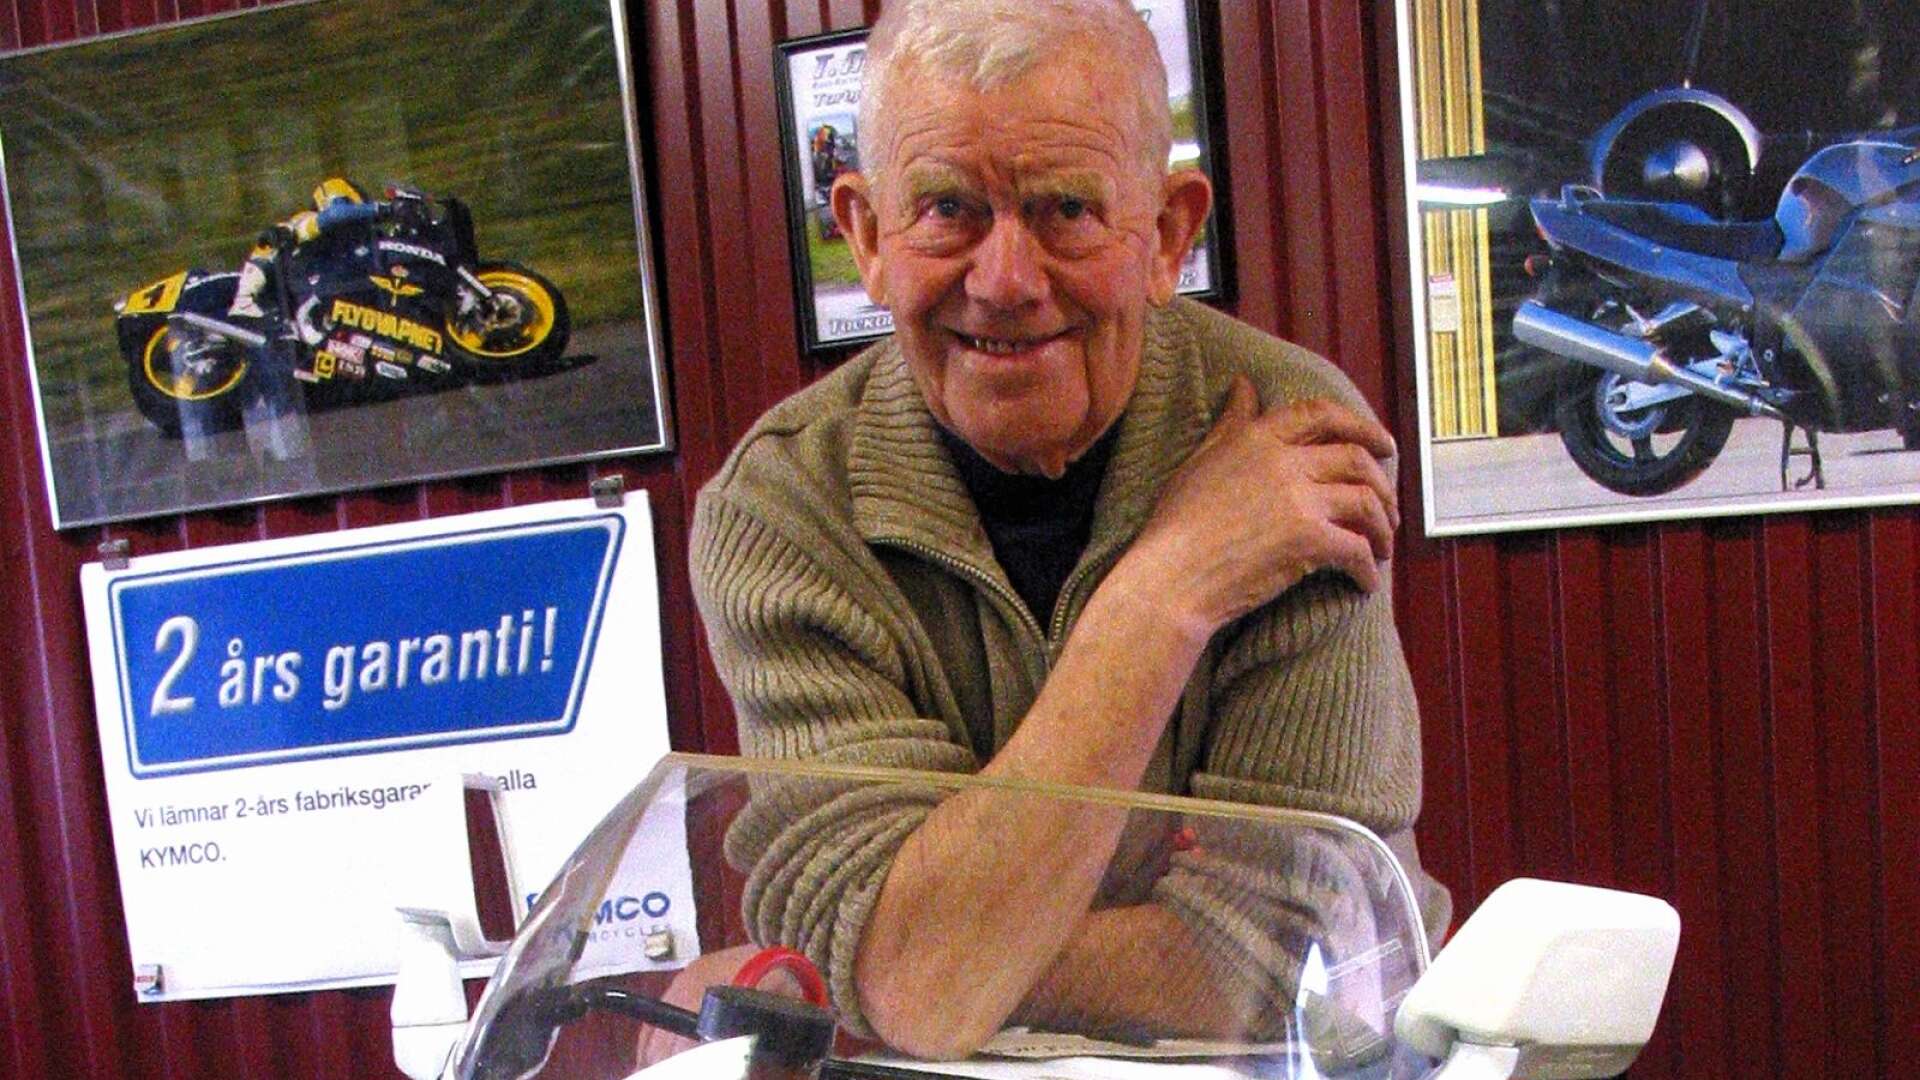 Roadracingprofilen Lennart Högberg har gått bort i en ålder av 93 år.